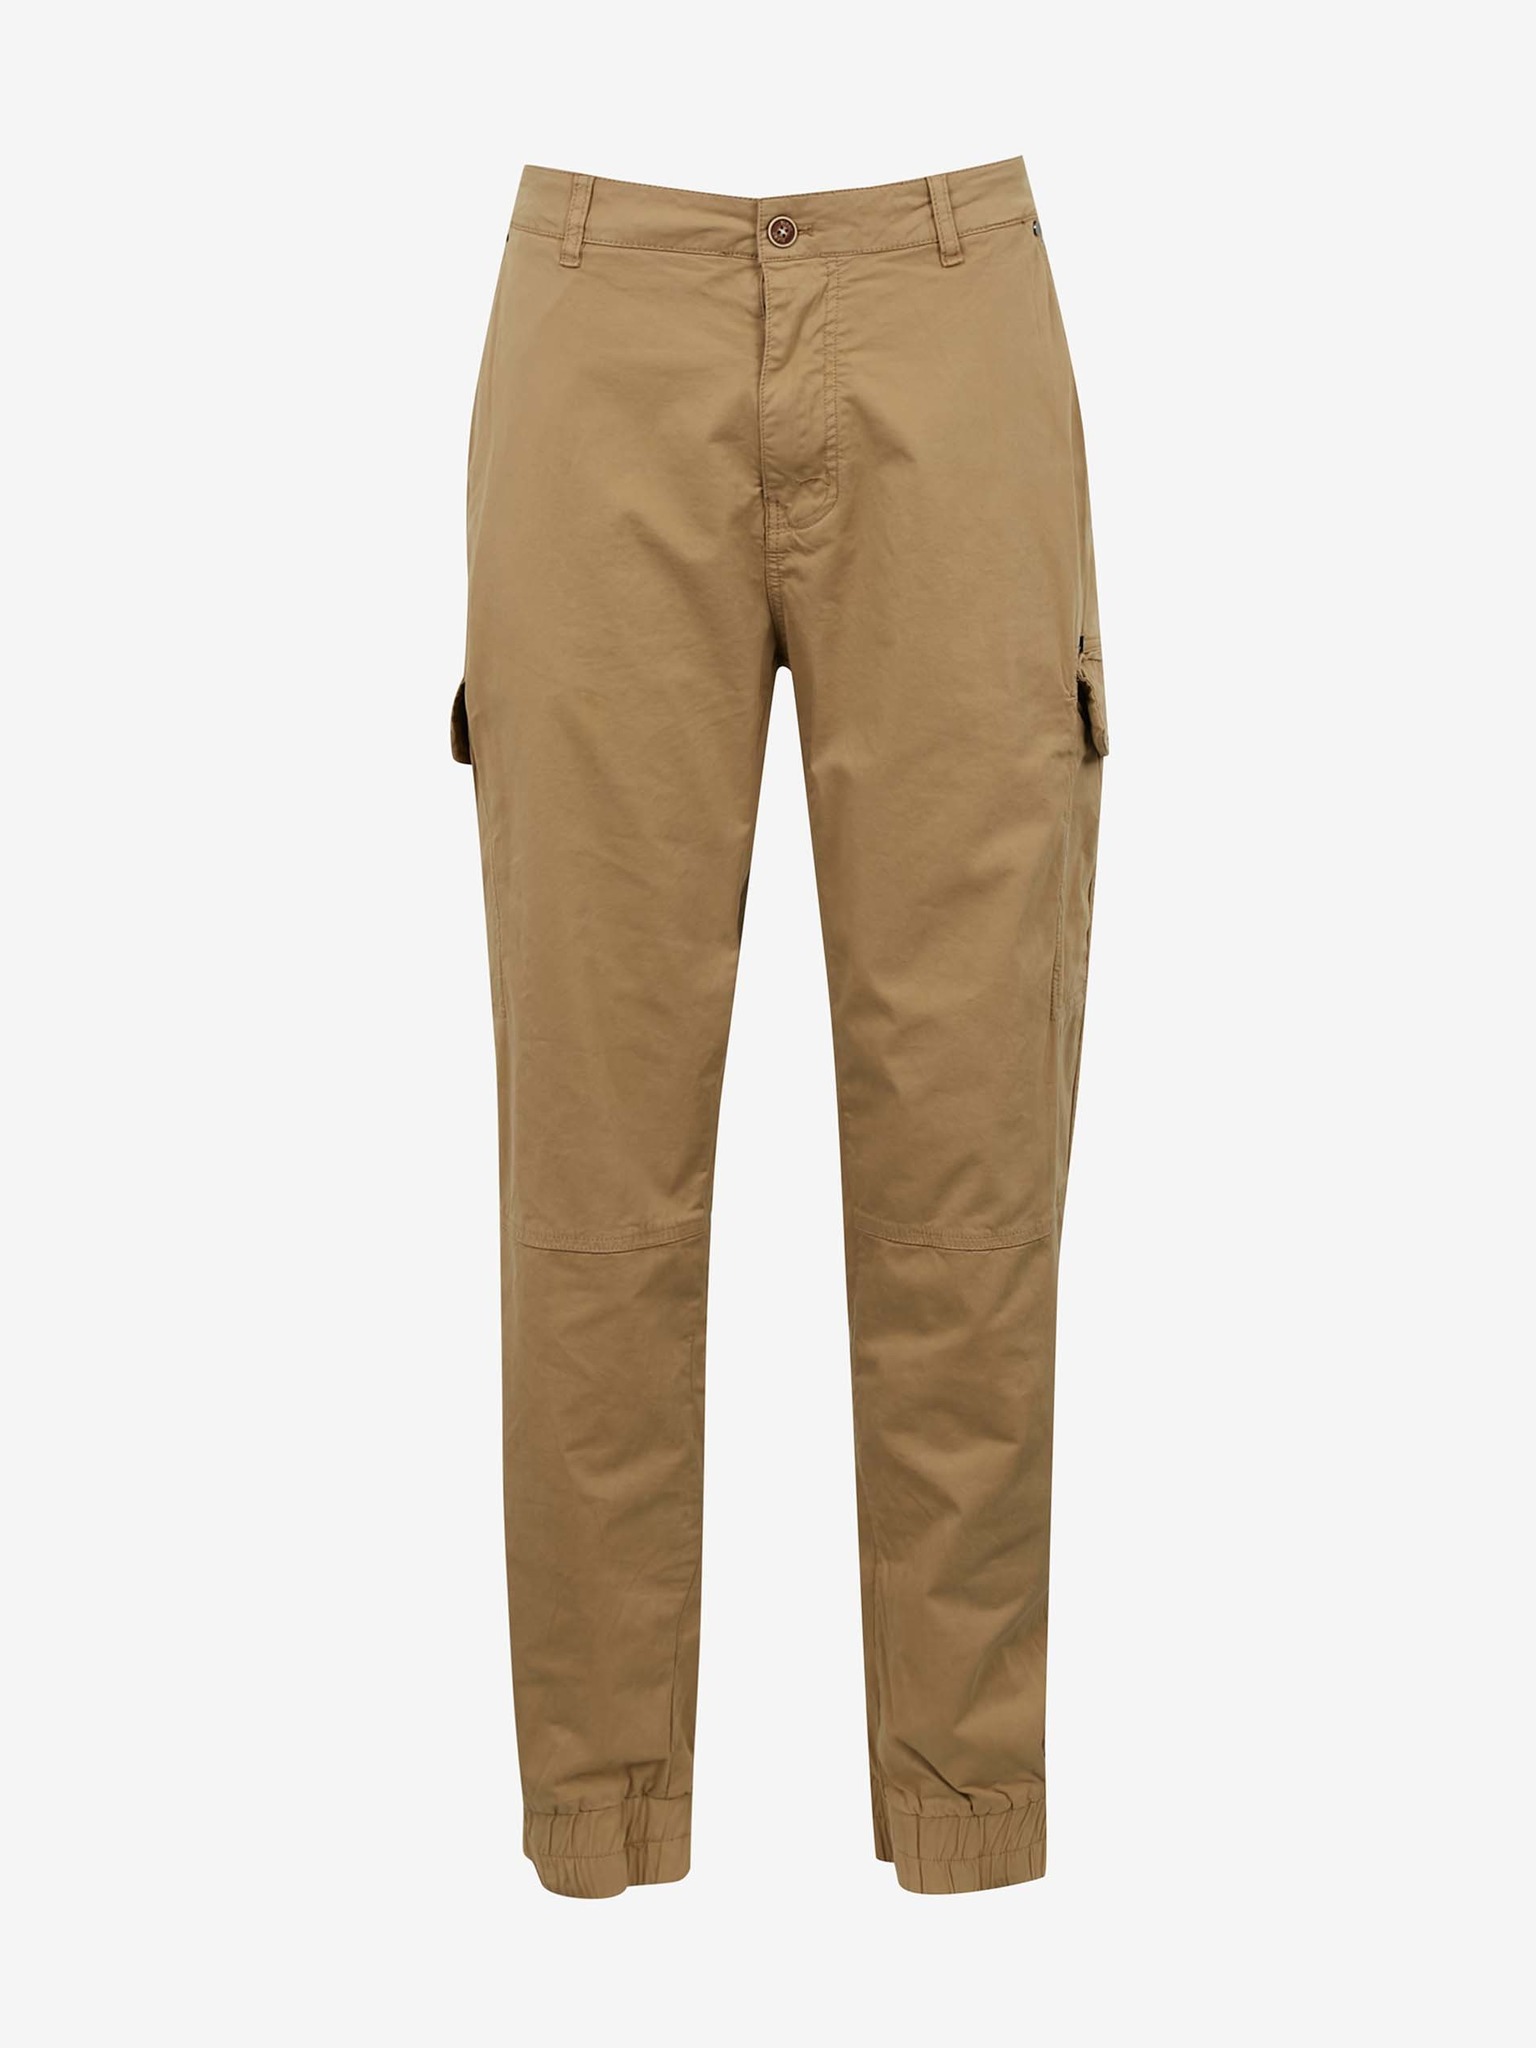 Fotografie Světle hnědé kalhoty s kapsami Blend Nan - 5XL